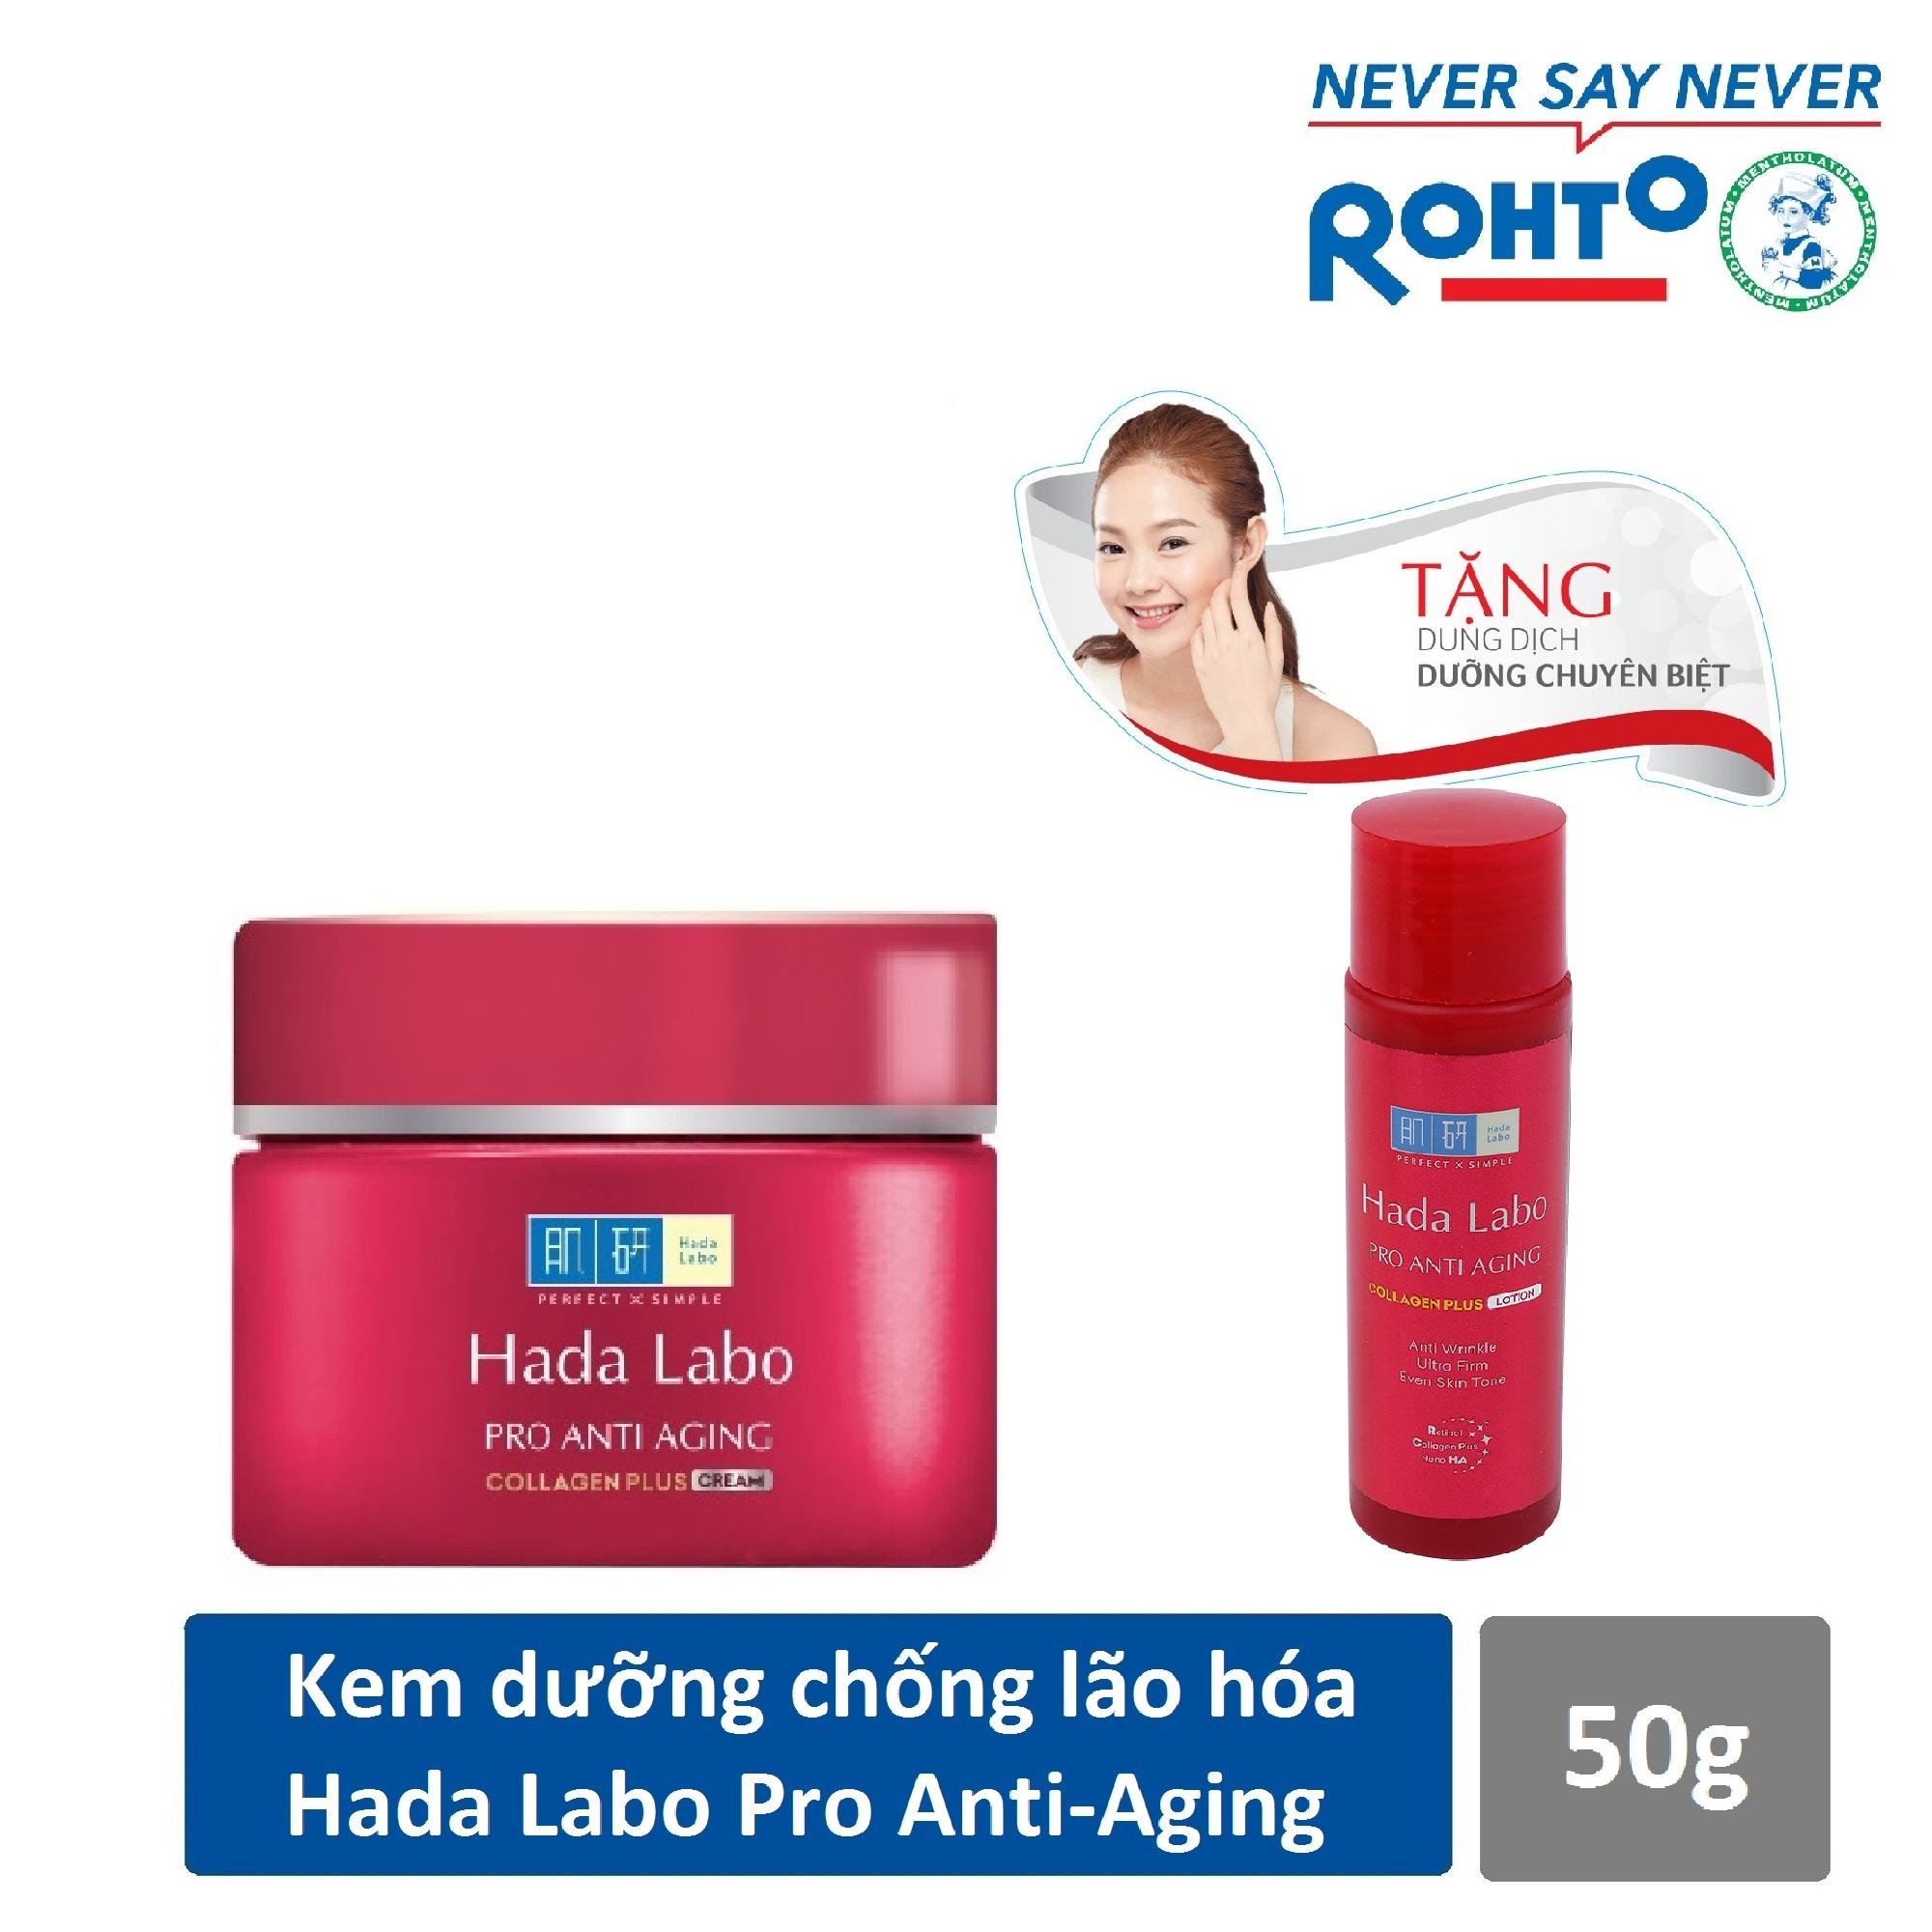 Kem dưỡng chuyên biệt chống lão hóa Hada Labo Pro Anti Aging Cream 50g + Tặng Dung dịch Hada Labo...